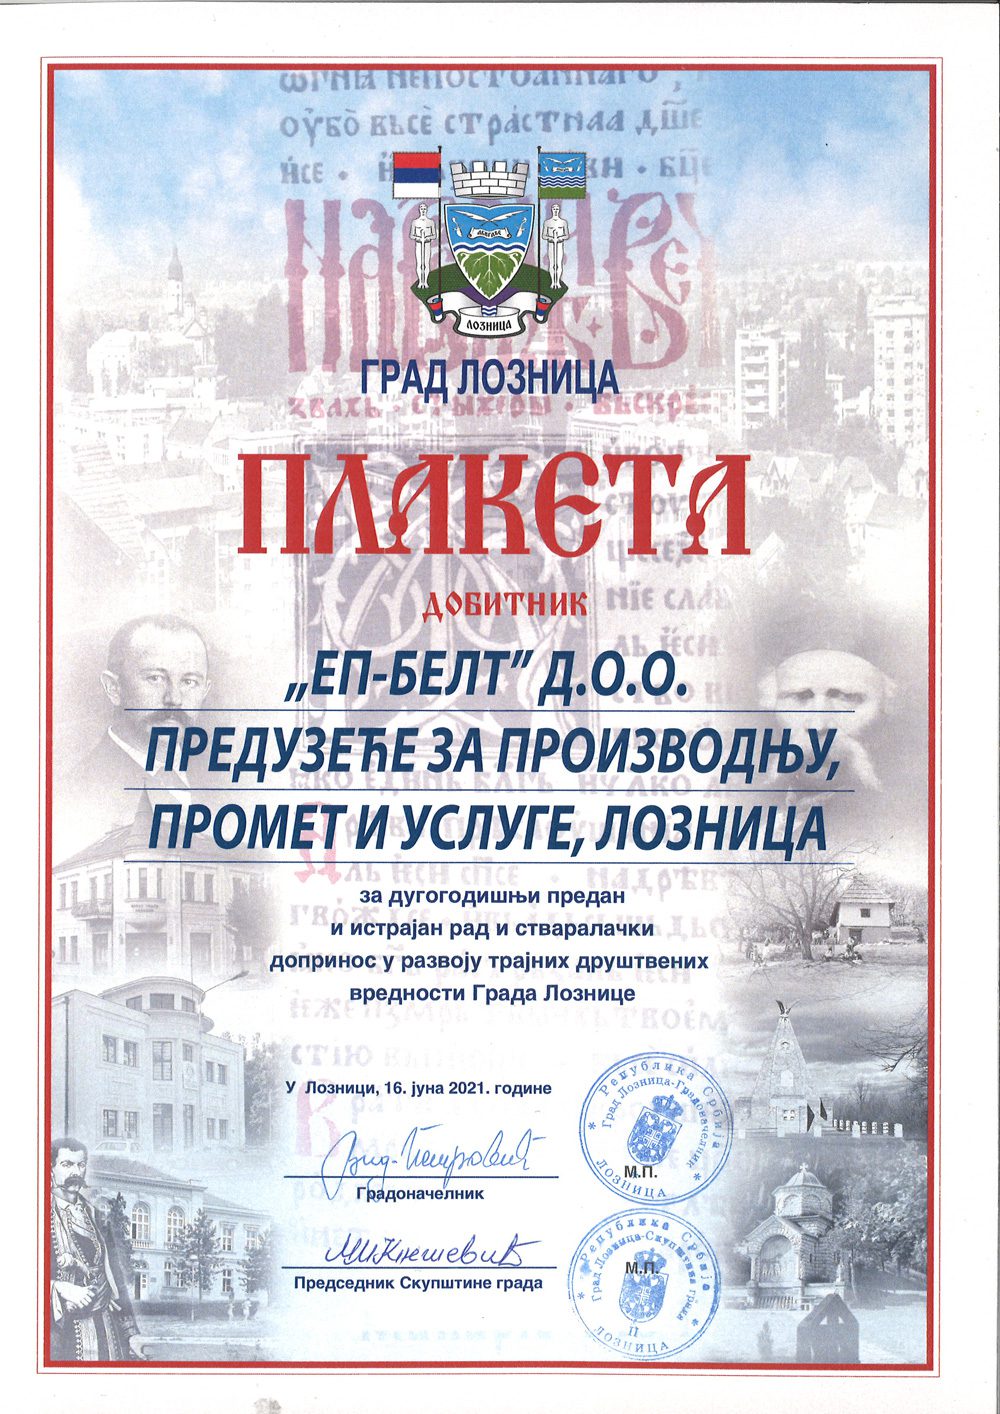 Plaketa grada Loznice